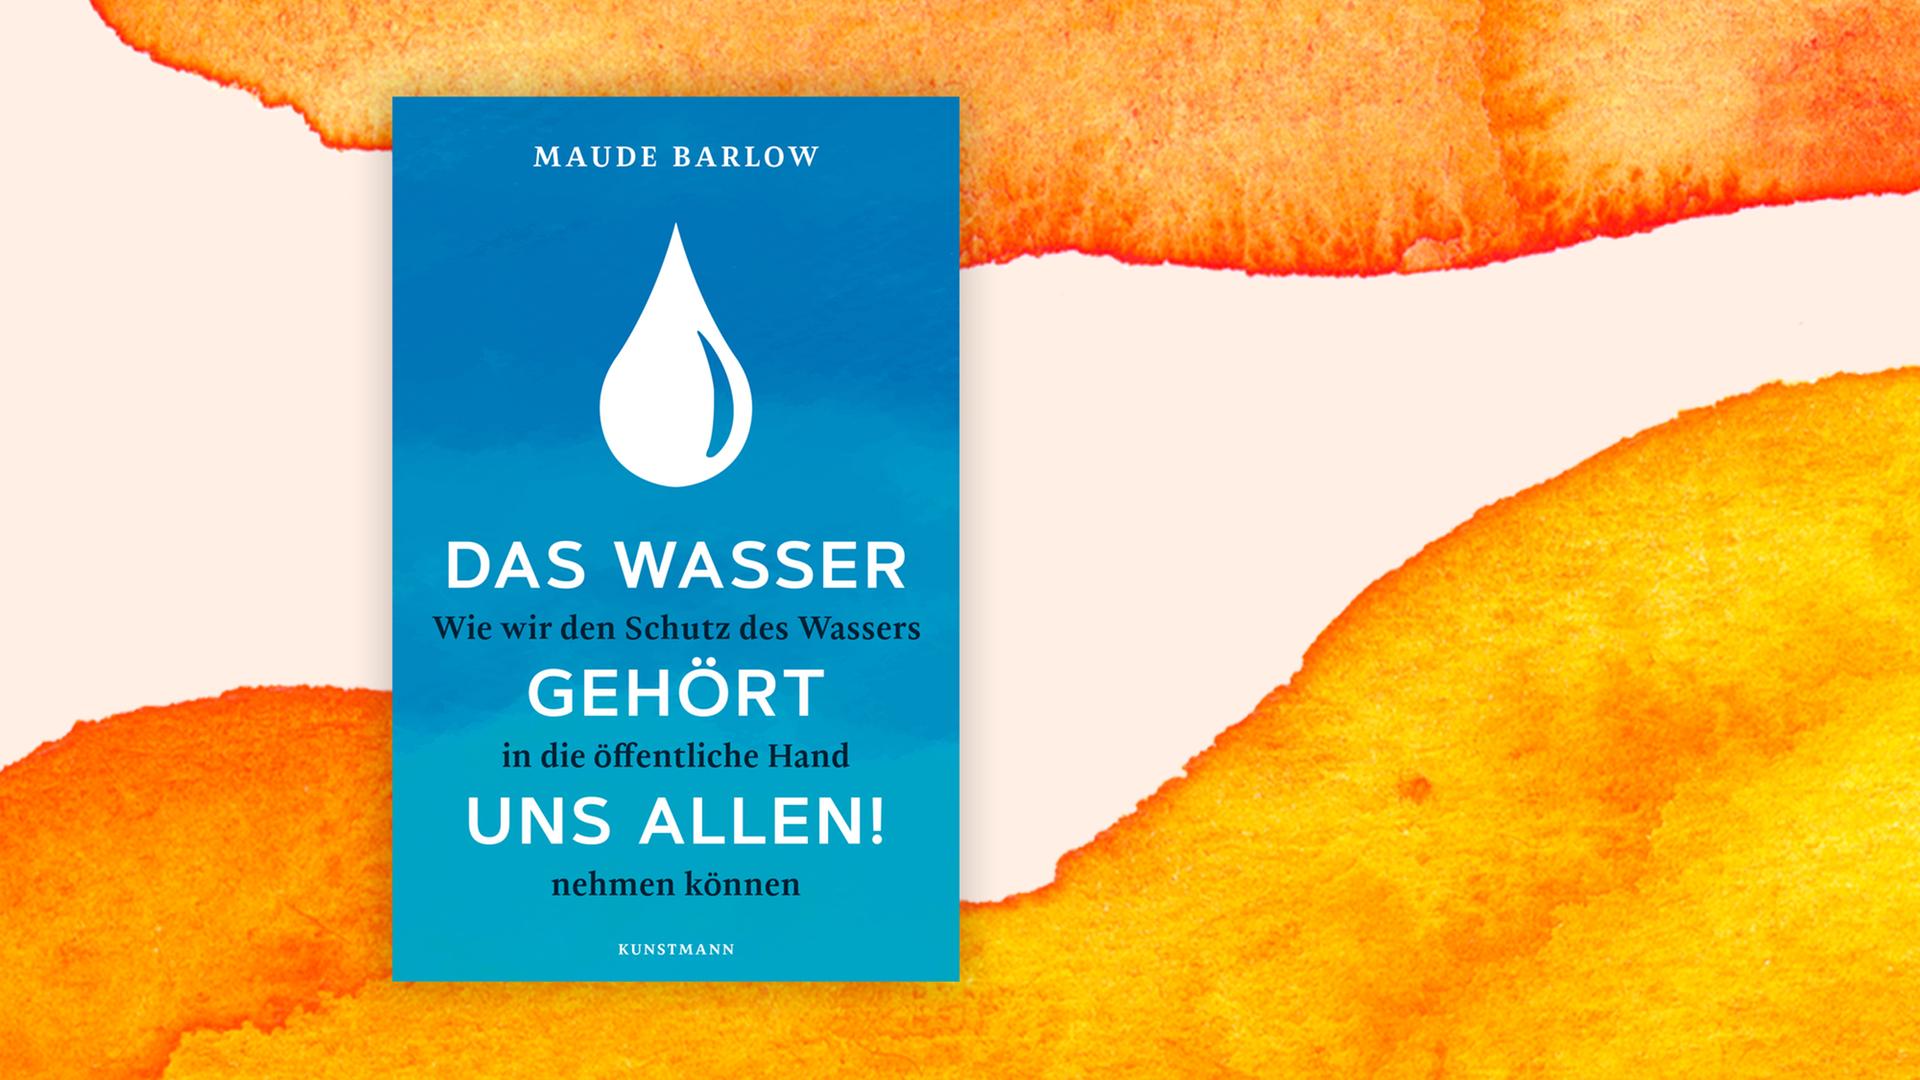 Cover des Buchs "Das Wasser gehört uns allen": Vor blauem Hintergrund befindet sich ein illustrierter großer weißer Wassertropfen.